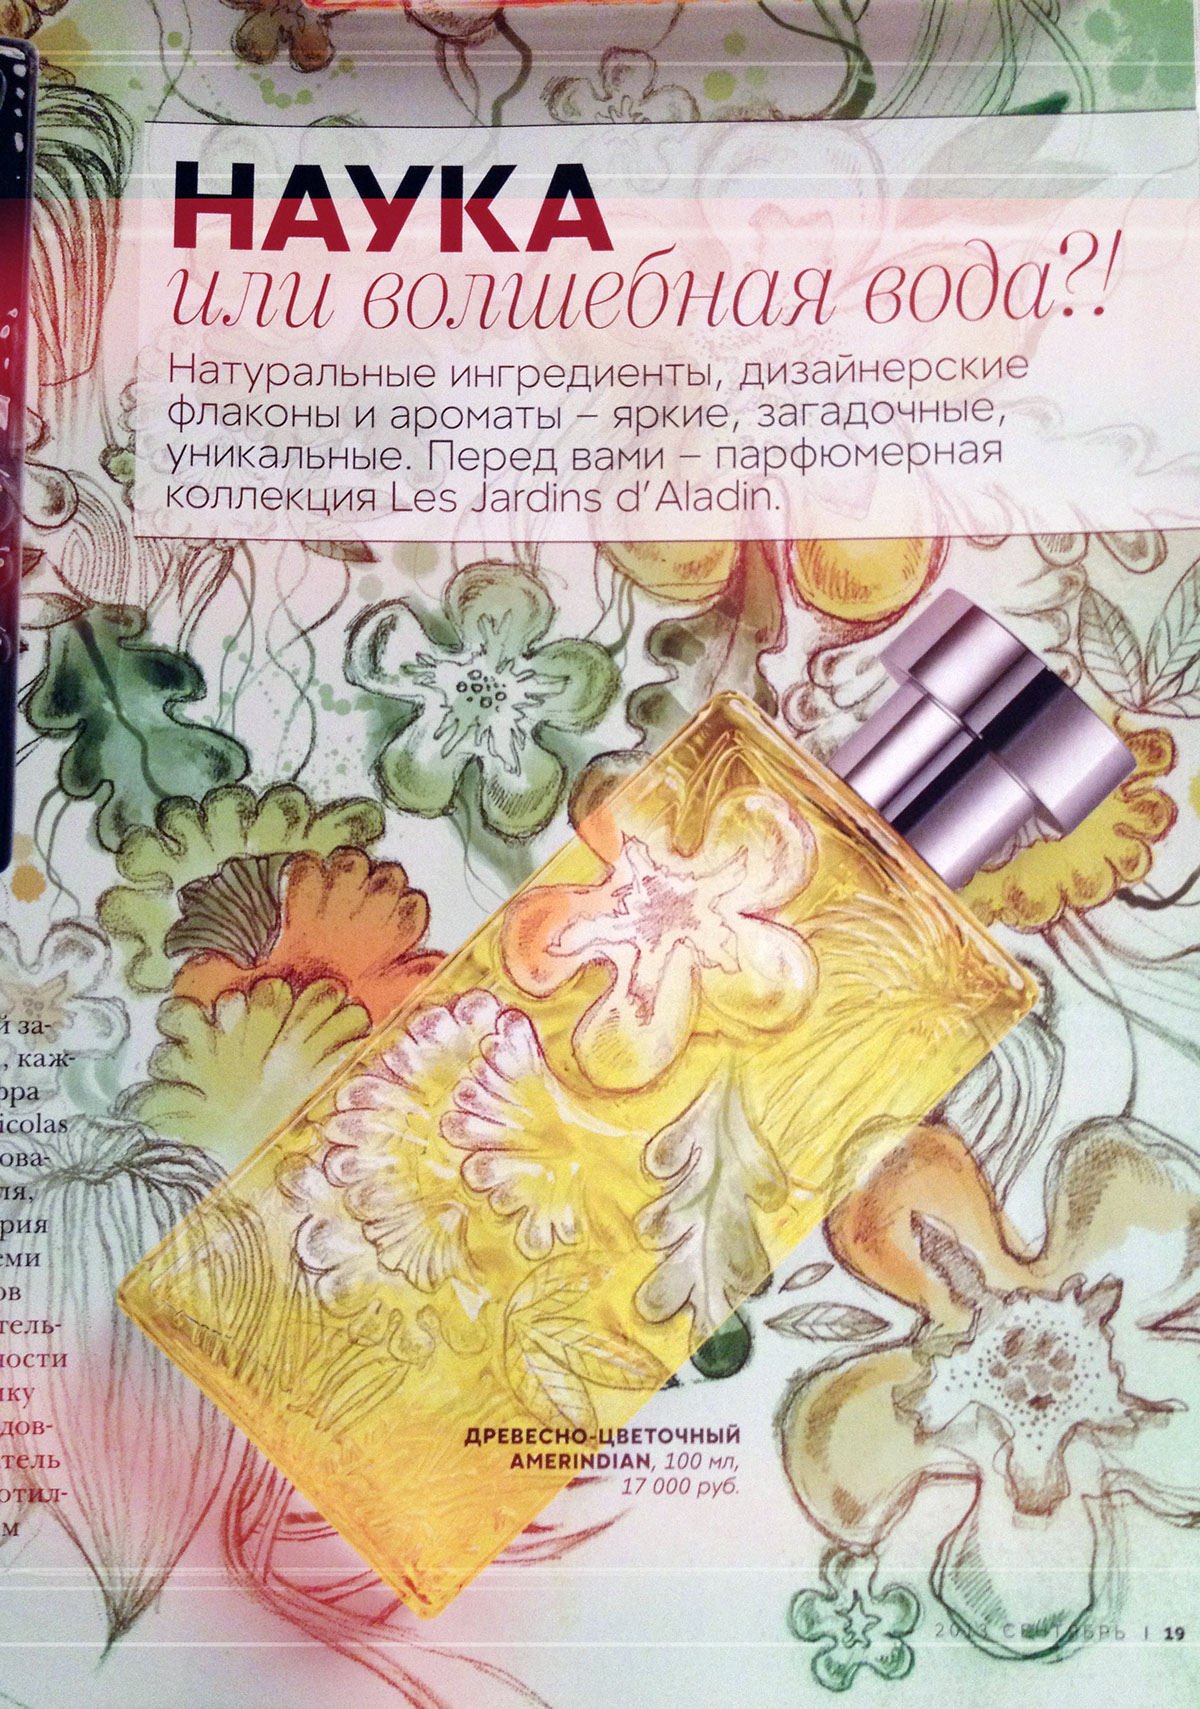 vogue beauty ads magazine Flowers pattern